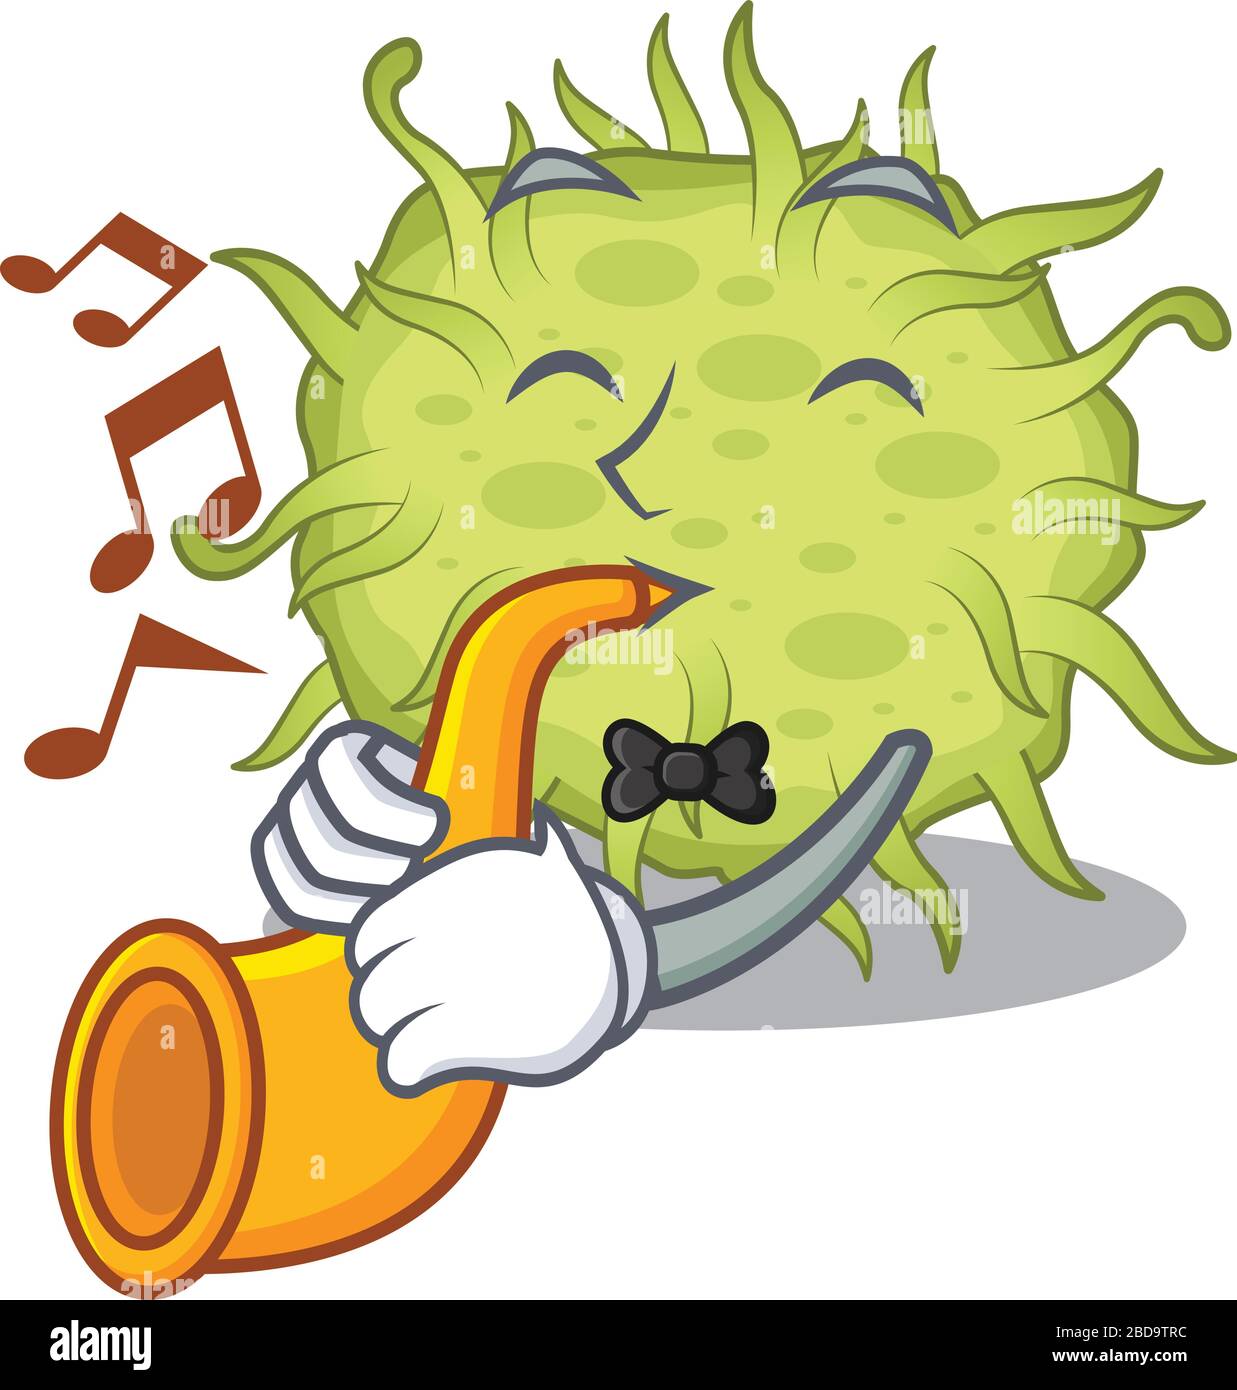 Musicien talentueux de bactéries coccus dessin de dessin de dessin animé jouant une trompette Illustration de Vecteur